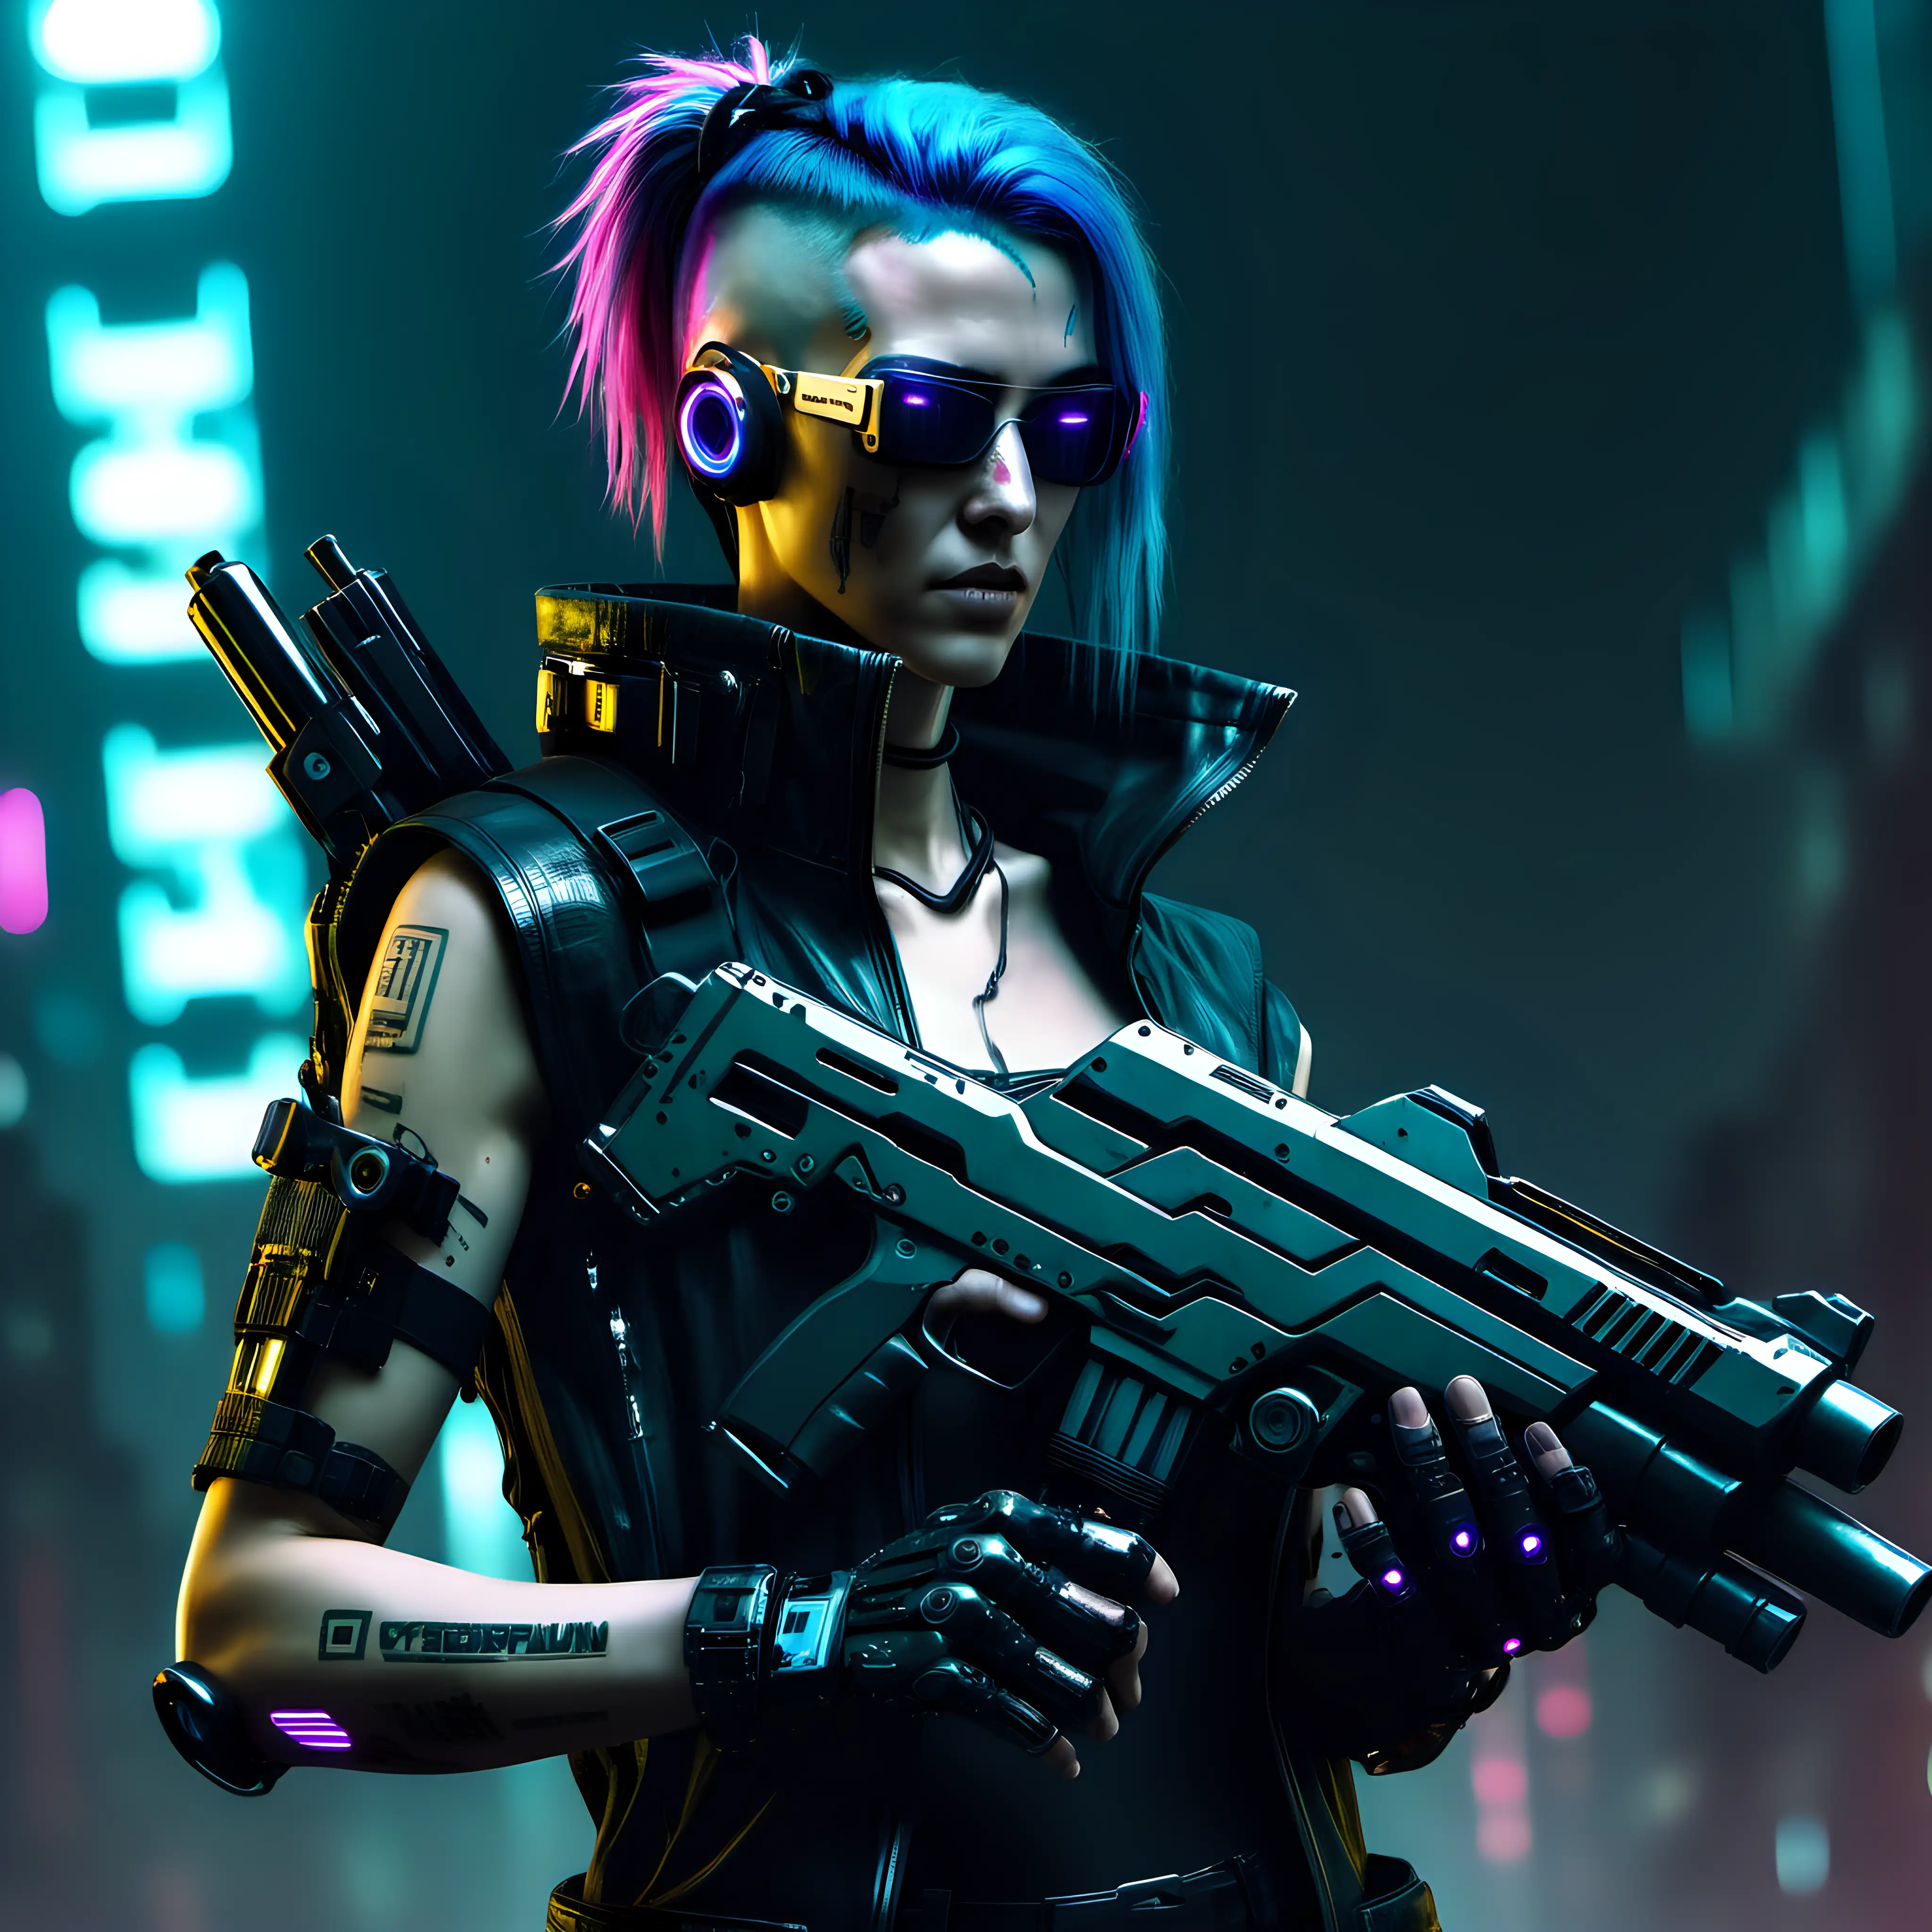 Cyberpunk holding guns